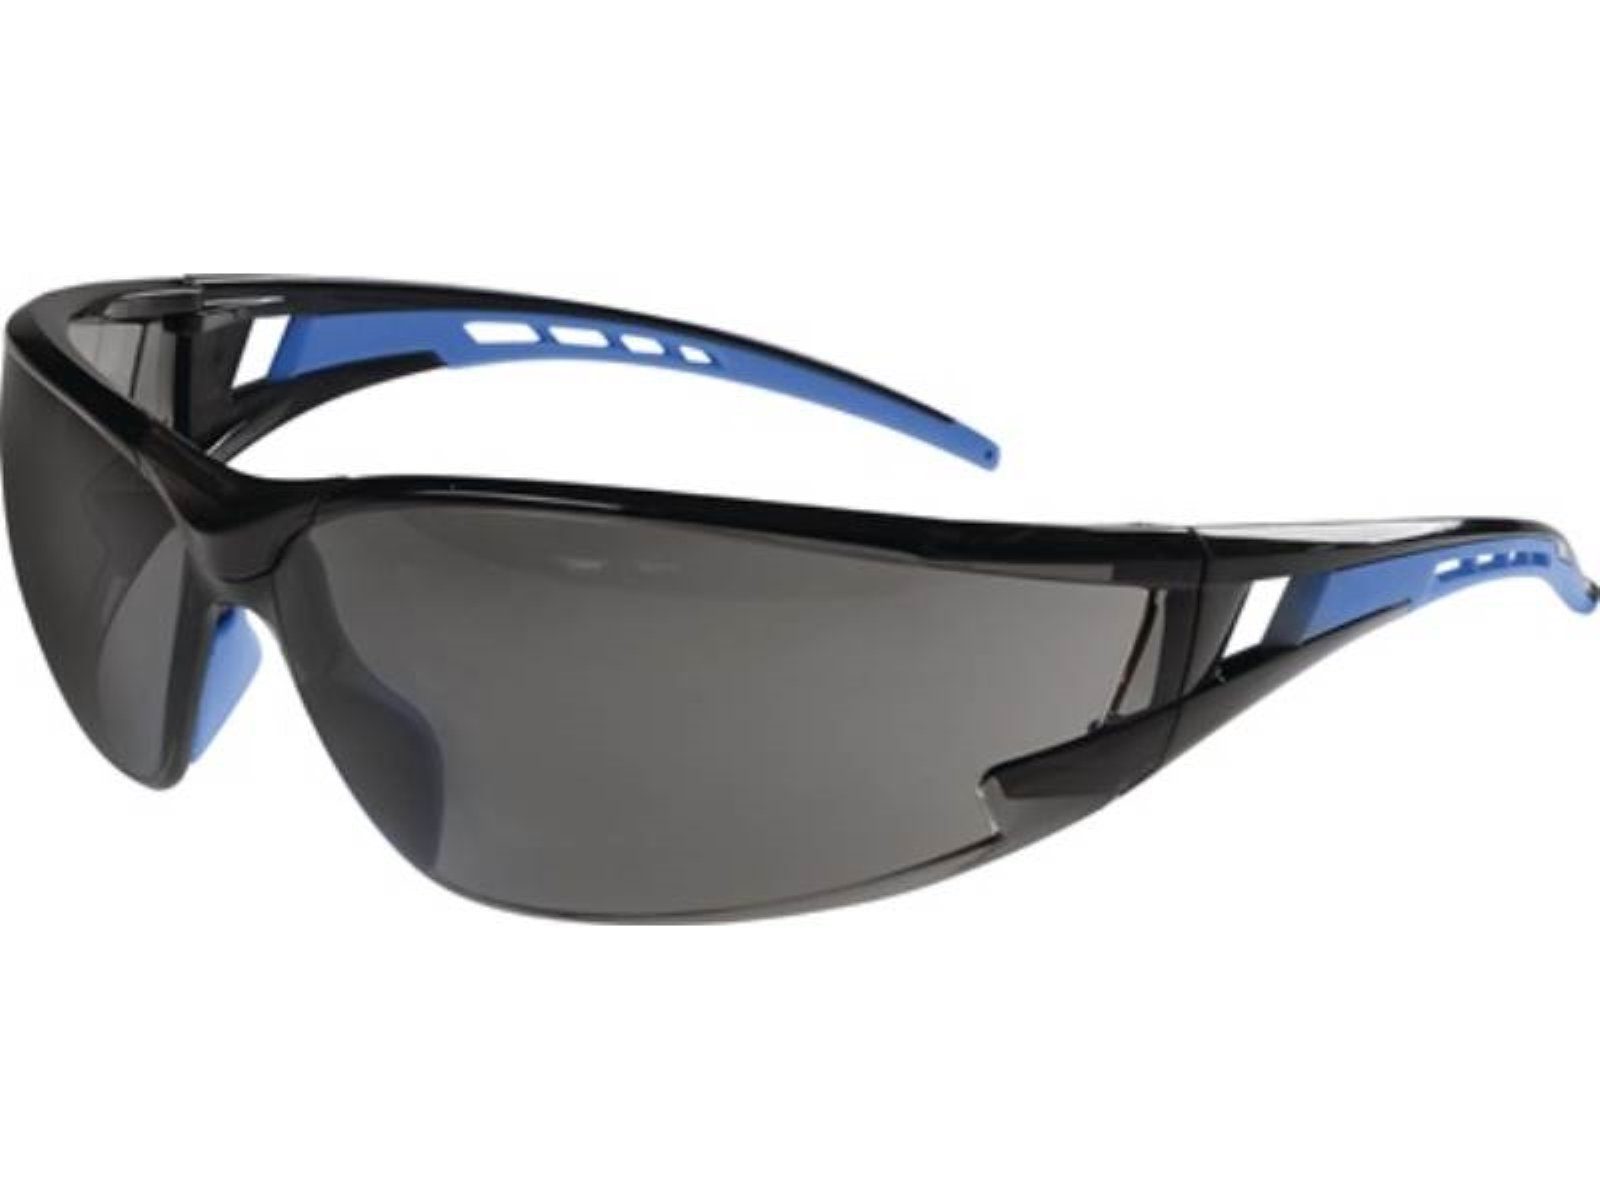 PC 2 EN 166:201 Bügel blau,Scheibe Schutzbrille Falcon getönt Arbeitsschutzbrille EN 166